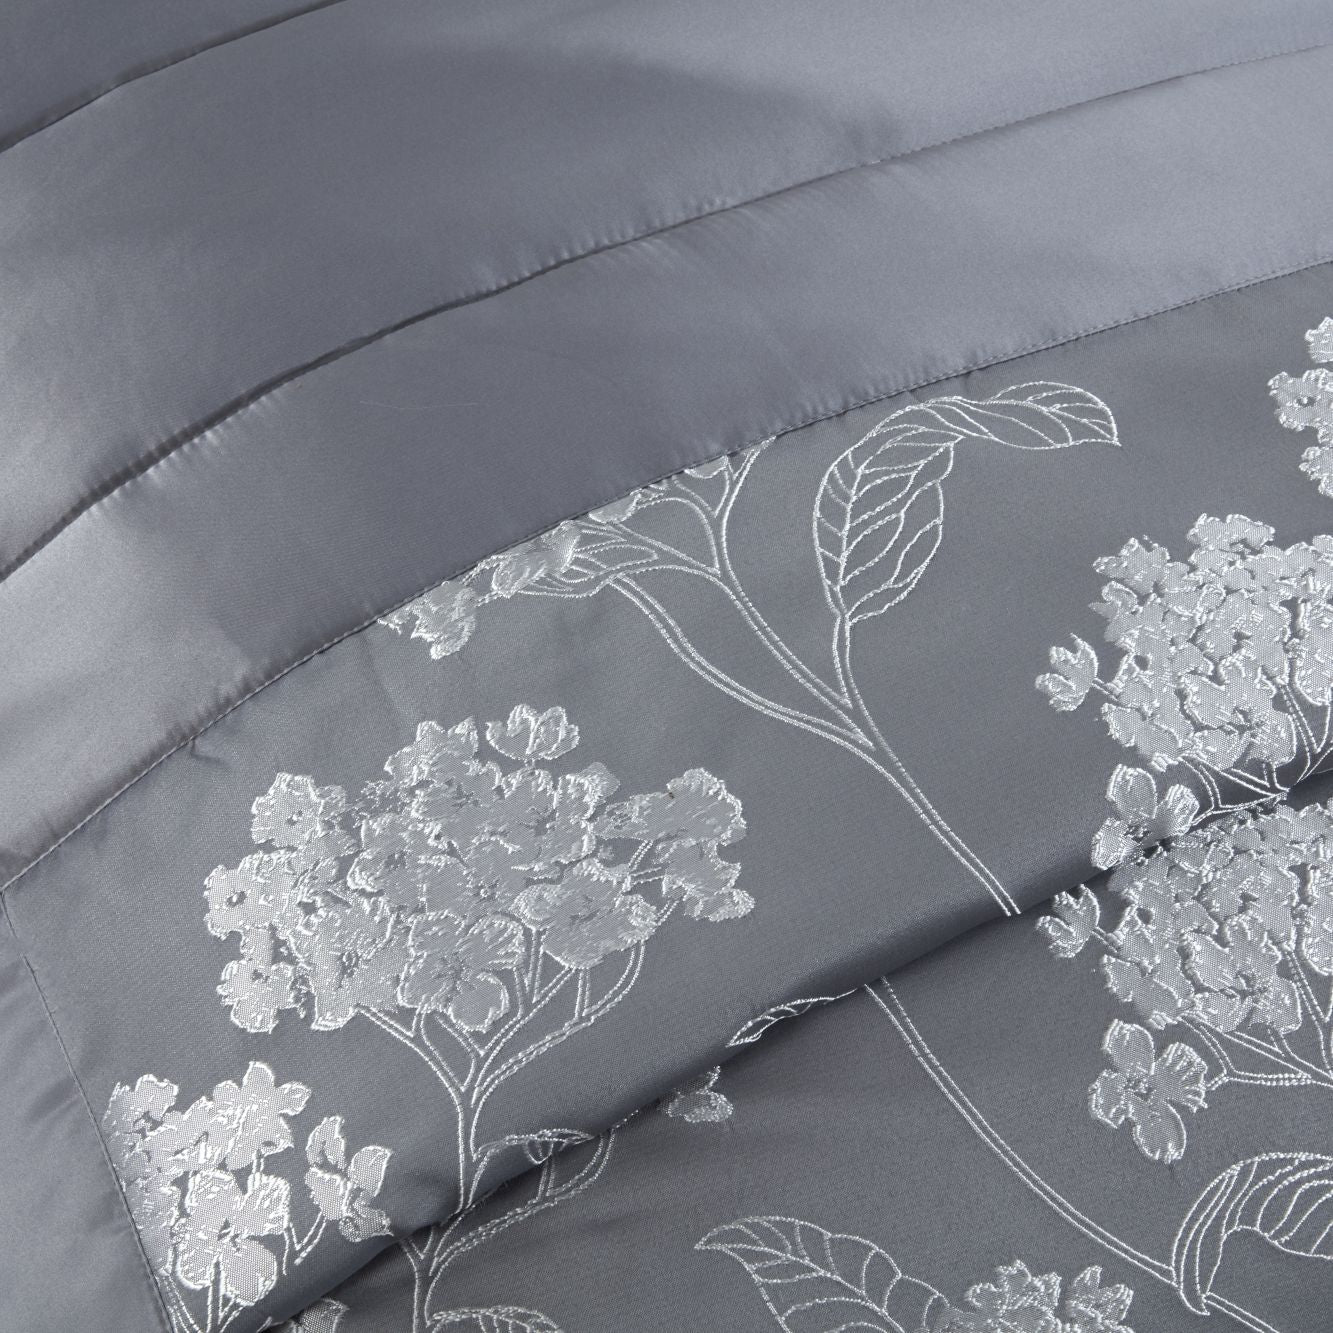 Blossom Silver Embellished Jacquard Quilted Bedspread Set (220cm x 240cm)